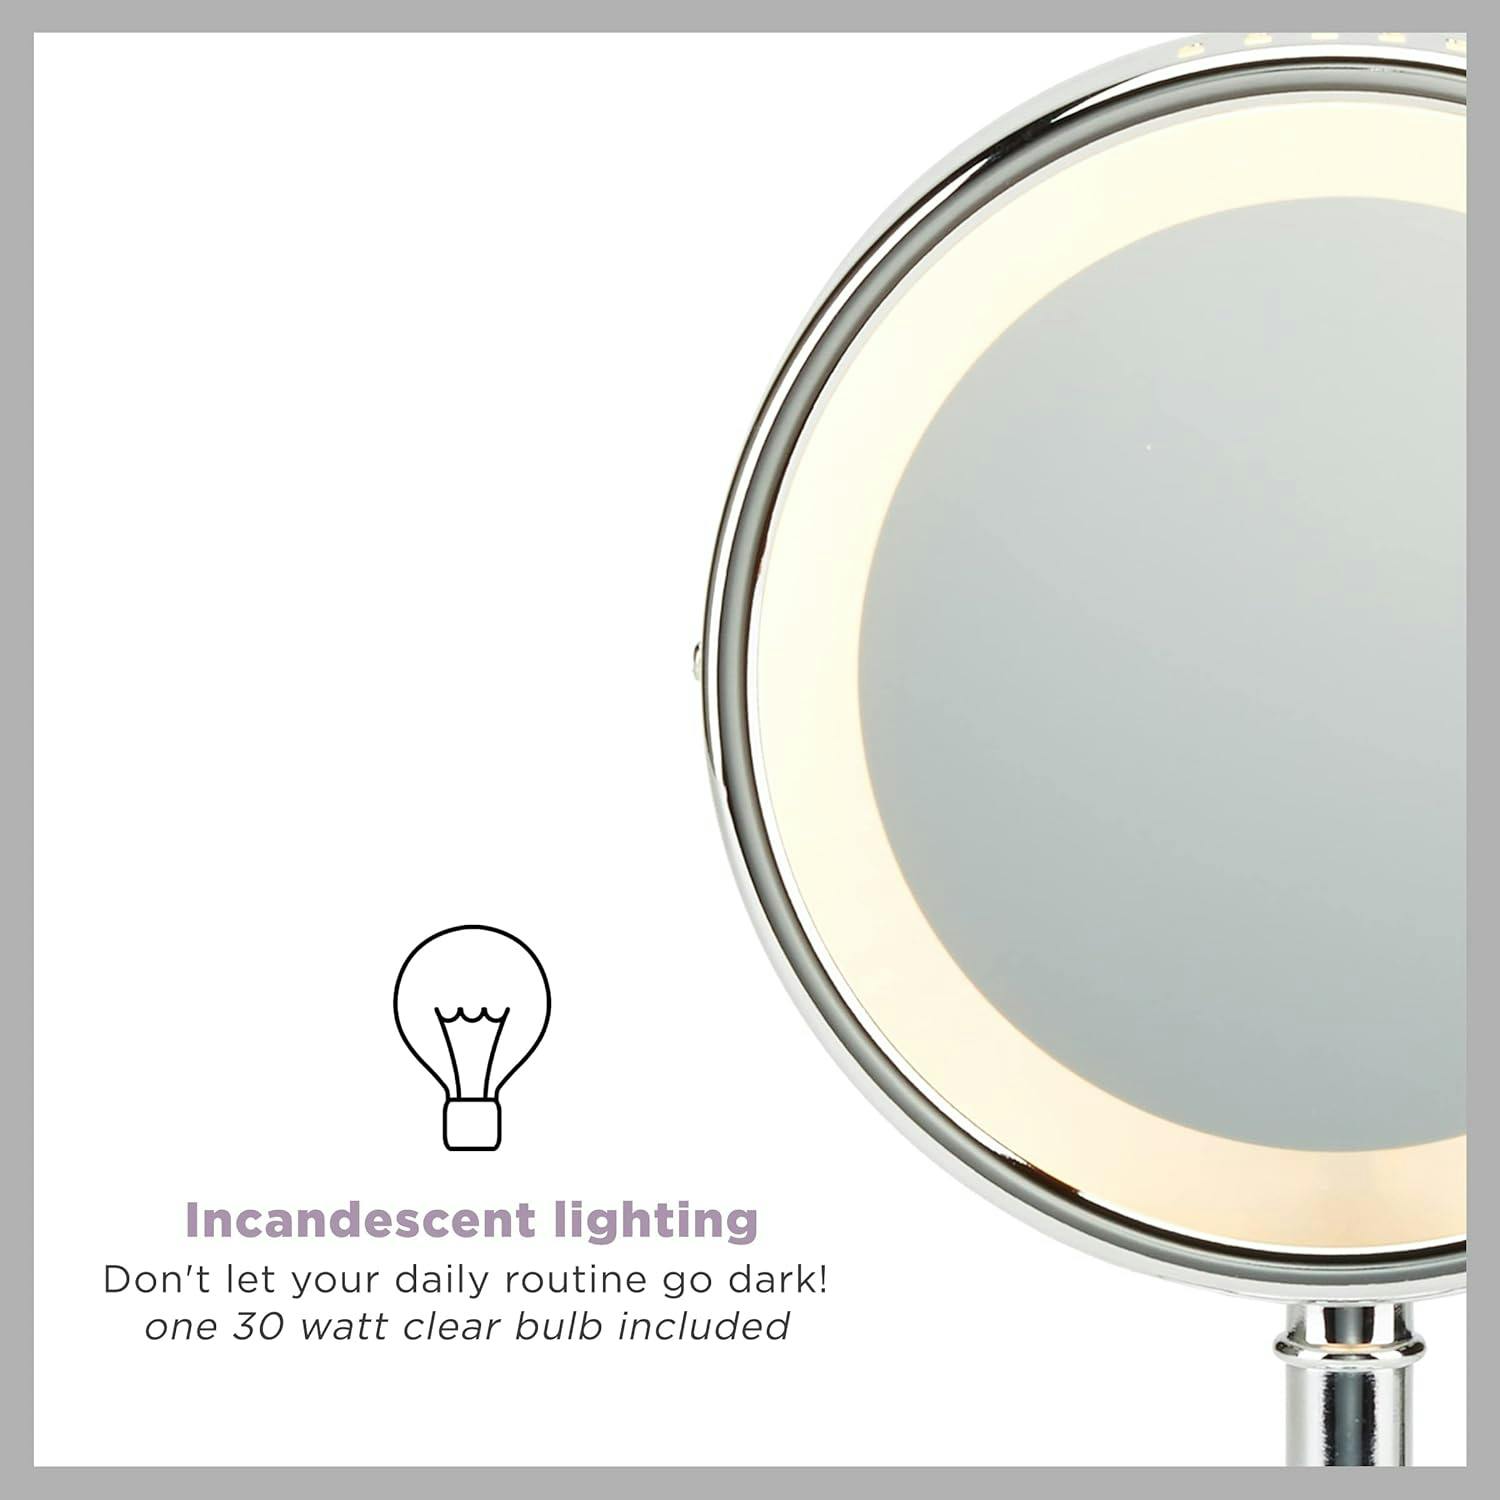 Elegant Chrome 7.75" Round Countertop Magnifying Mirror